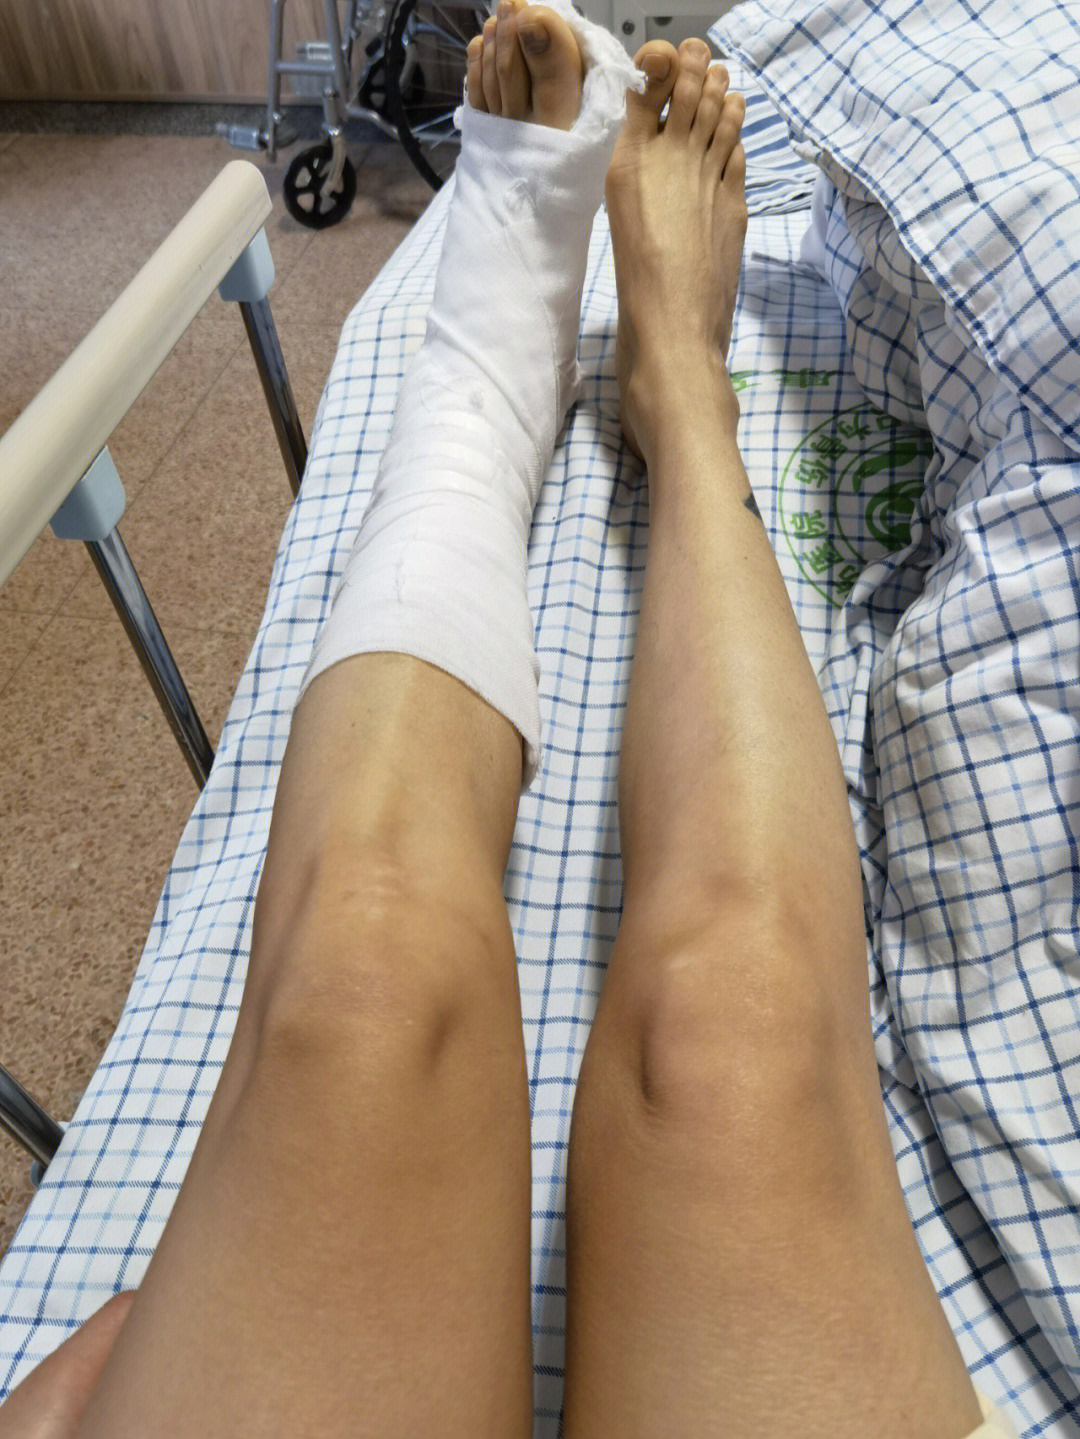 左脚踝骨折保守治疗第12天